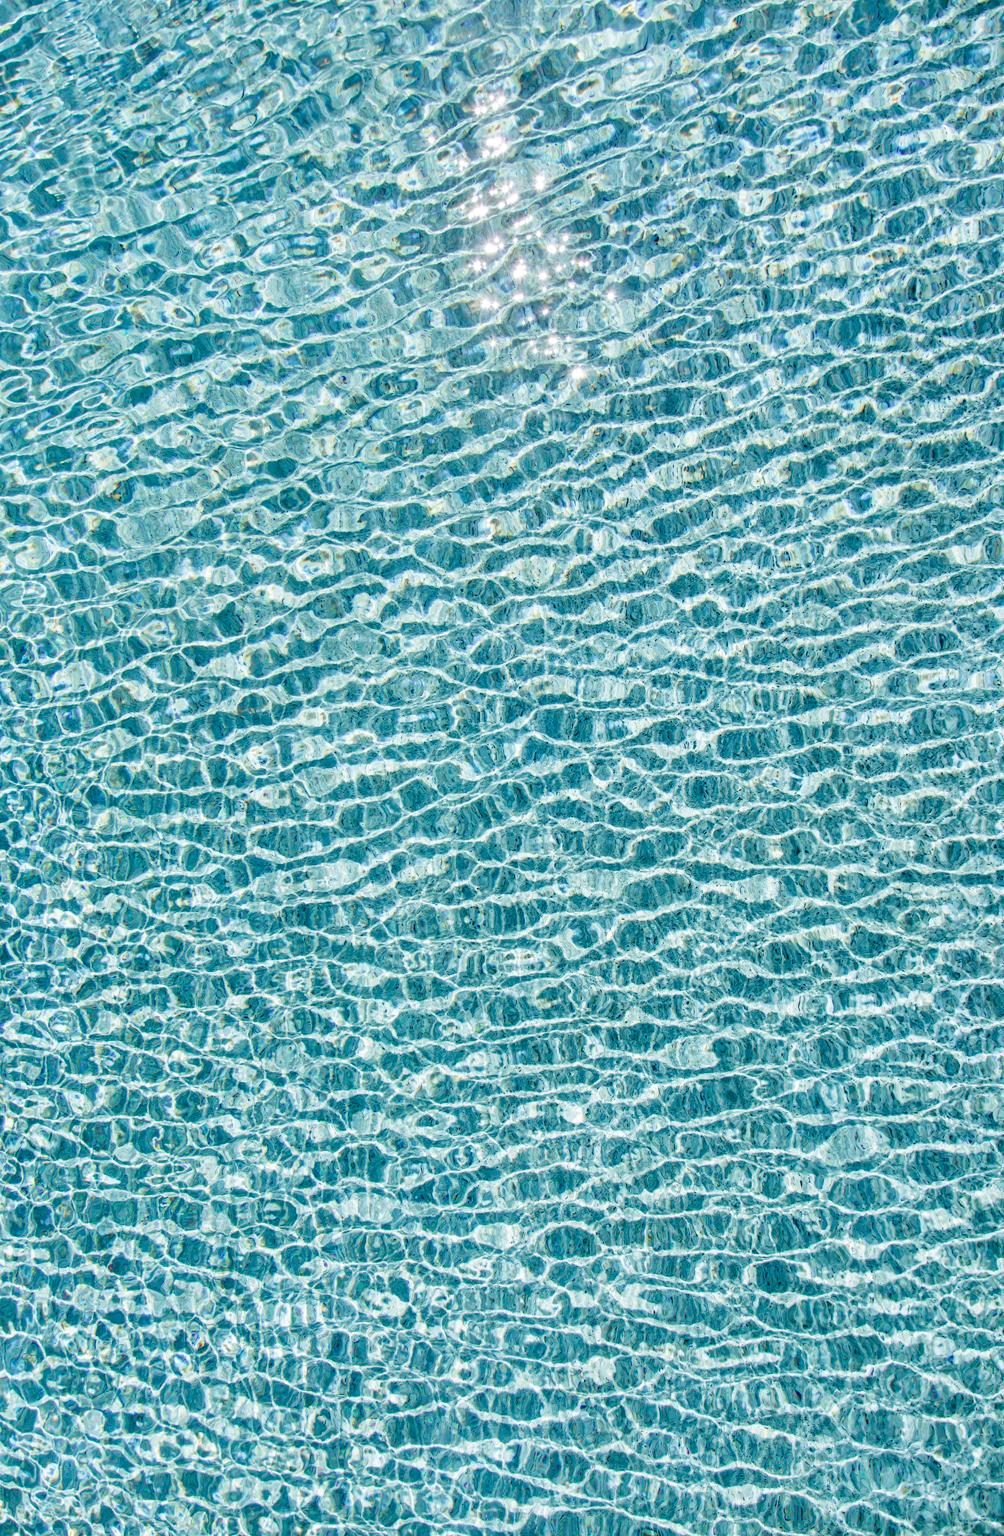 H2O V - photographie grand format de reflets du soleil sur la surface de l'eau de la piscine - Photograph de Erik Pawassar